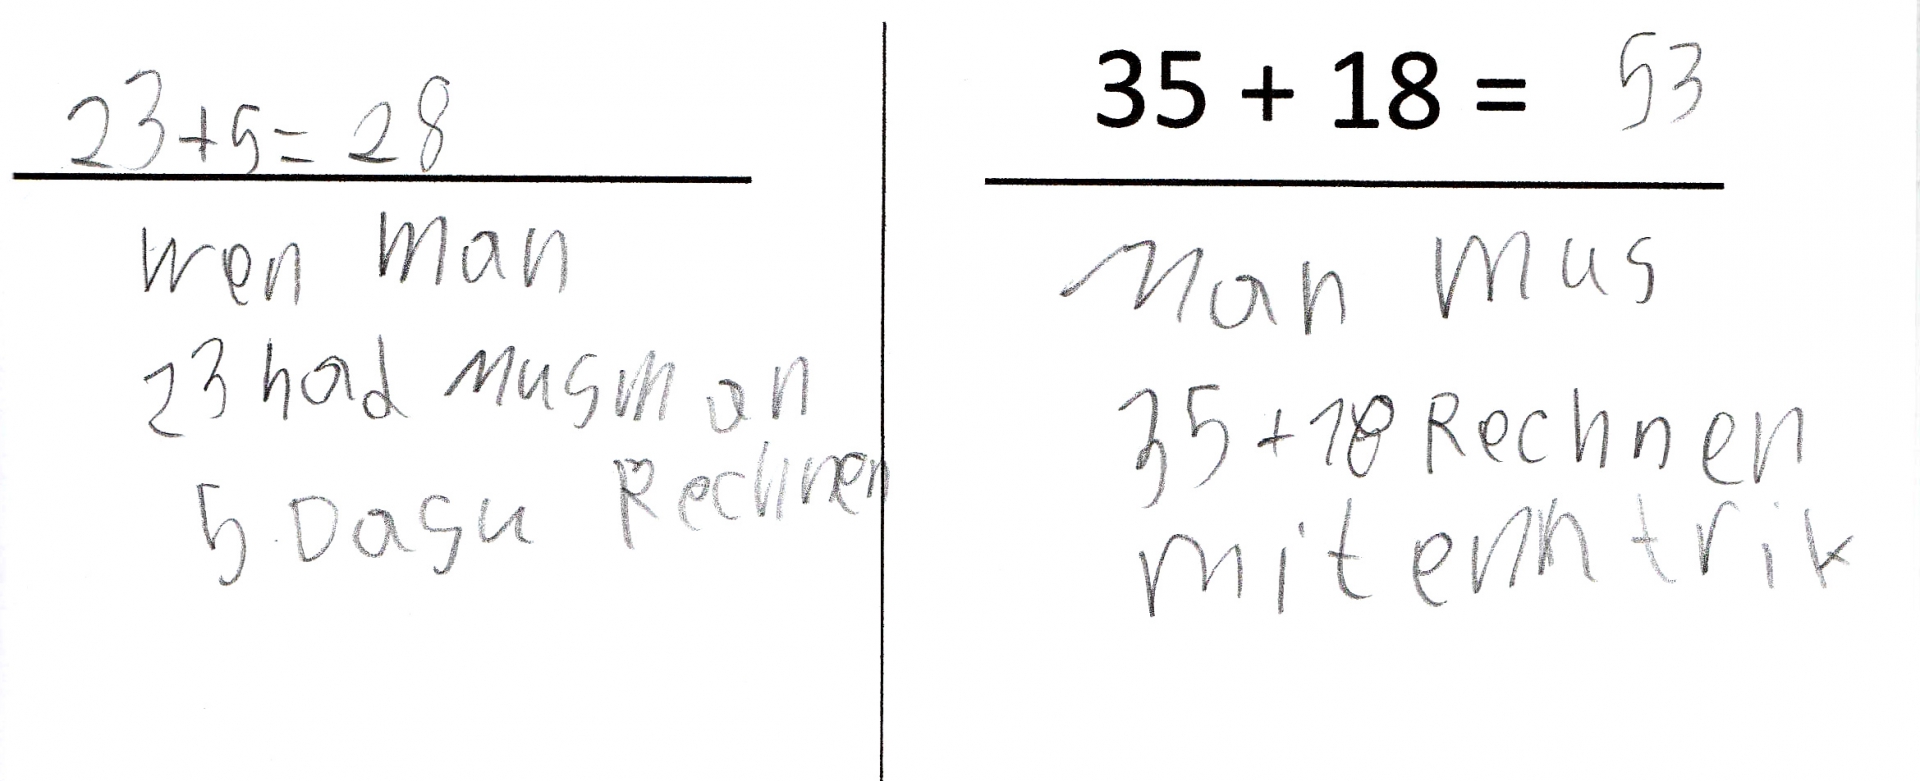 Links: leerer Strich, Schülerbearbeitung: „23 + 5 = 28“. Darunter ihre Erläuterung: „Wenn man 23 hat muss man 5 dazu rechnen“ (Rechtschreibung angepasst). Rechts: Strich, darauf Aufgabe: 35 + 18 =. Schülerlösung: „53“. Darunter ihre Erläuterung: „Man muss 35 + 18 rechnen mit einem Trick“ (Rechtschreibung angepasst).